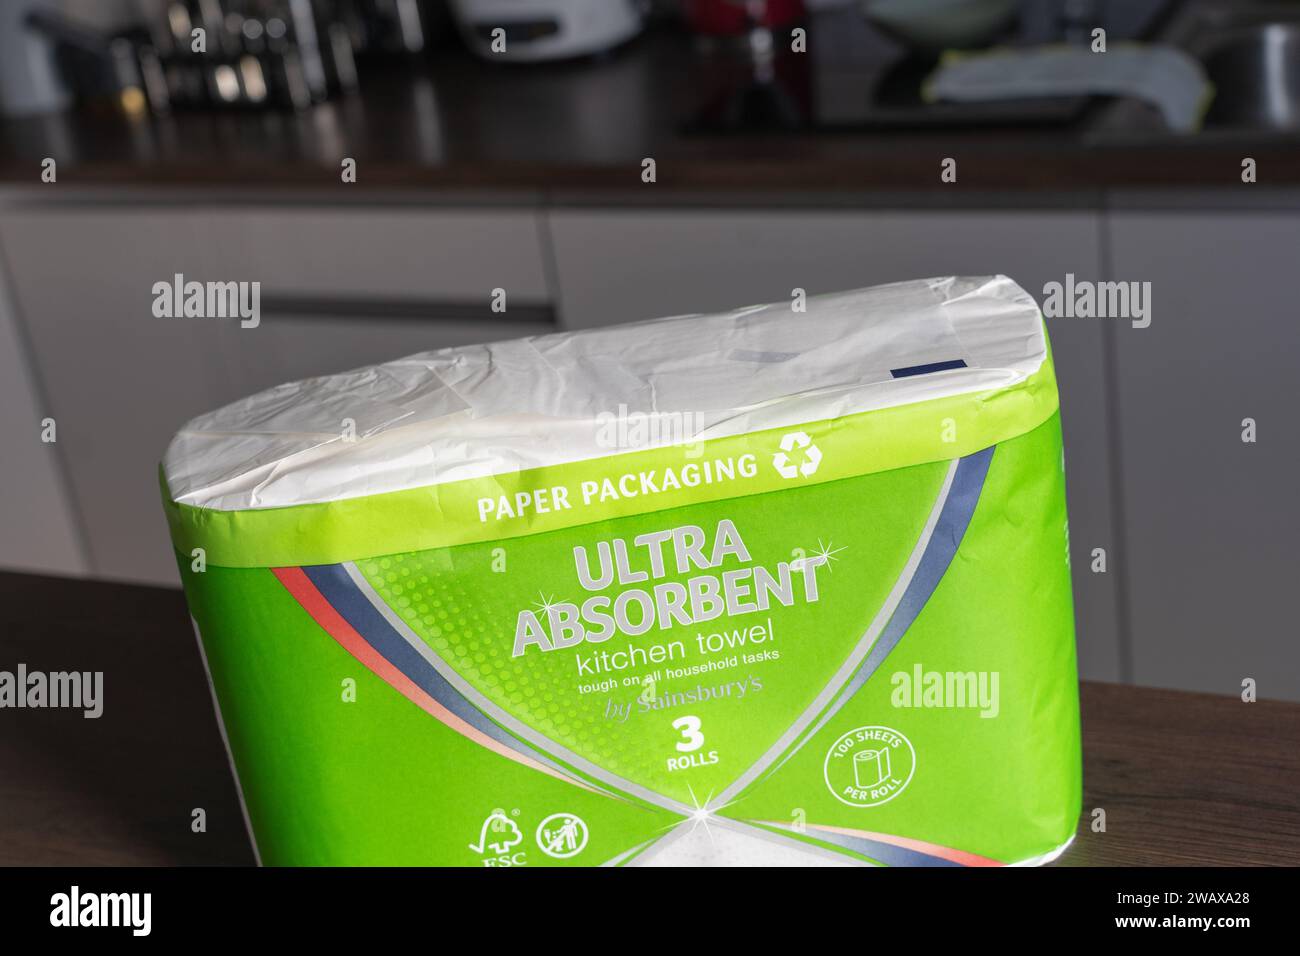 Confezione di asciugamani da cucina a marchio Sainsbury con imballaggio in carta e simbolo di riciclaggio, Regno Unito. Concetto: Riduzione degli sprechi, riduzione degli sprechi di plastica Foto Stock